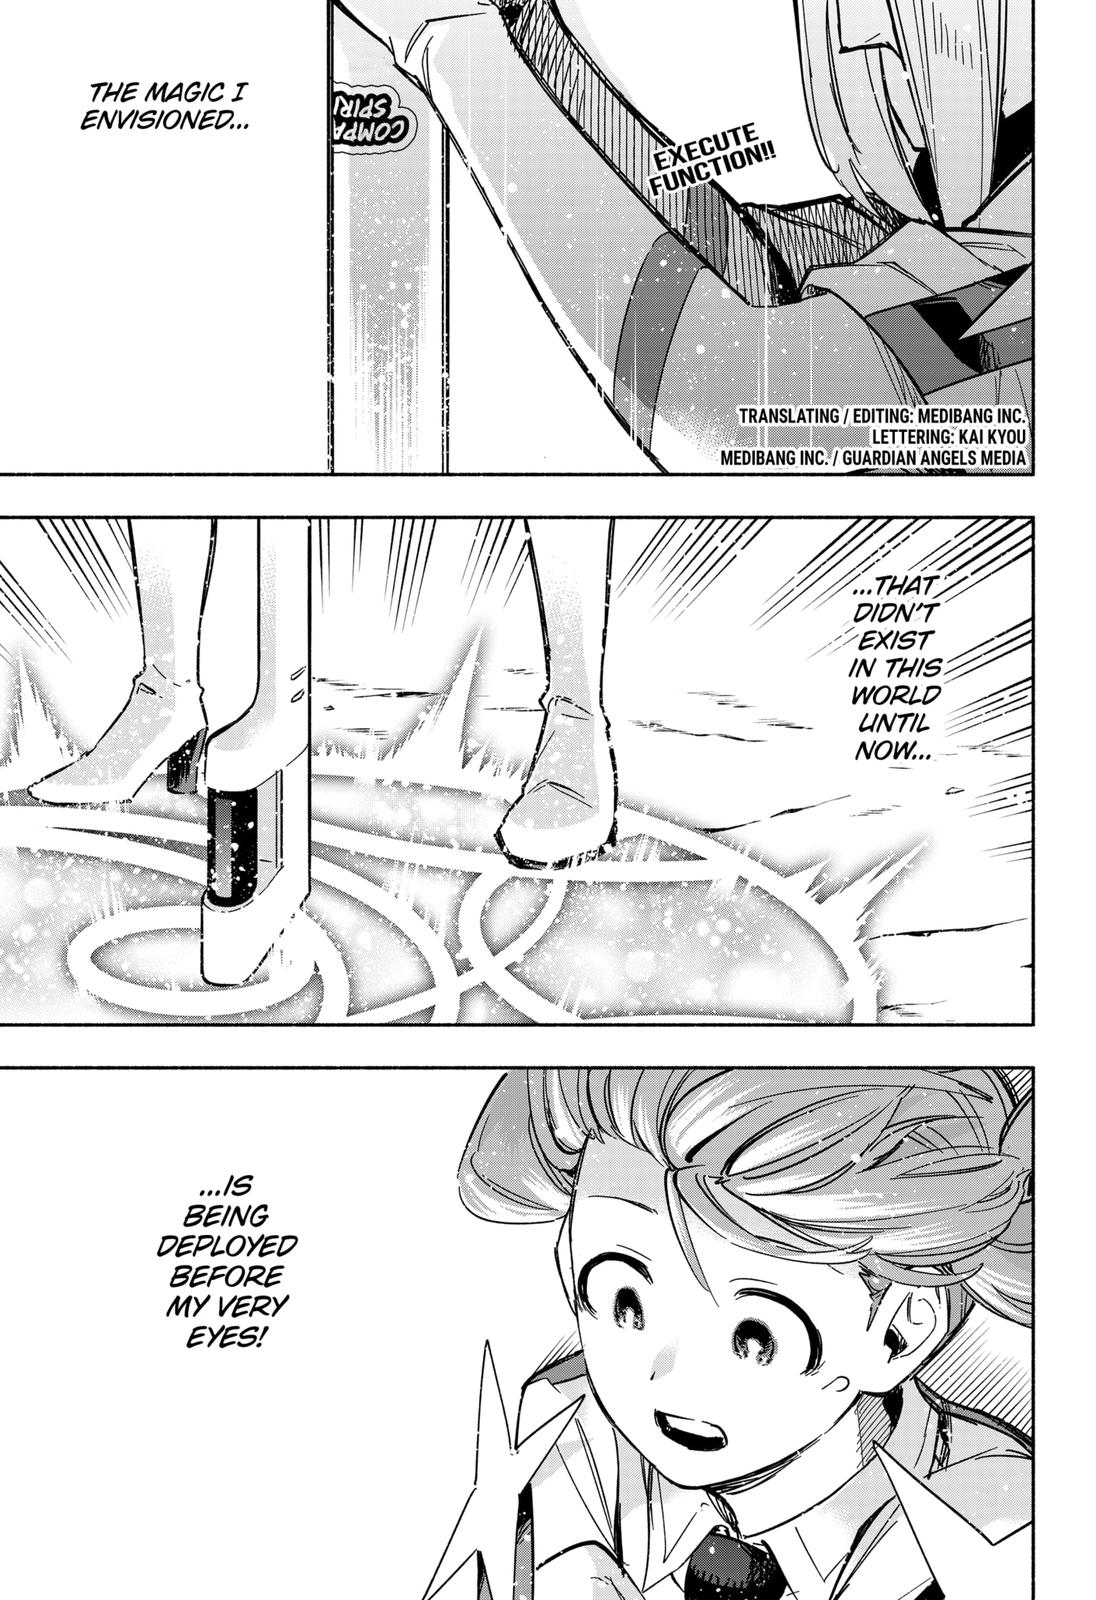 Kabushiki Gaisha Magi Lumiere - Page 1